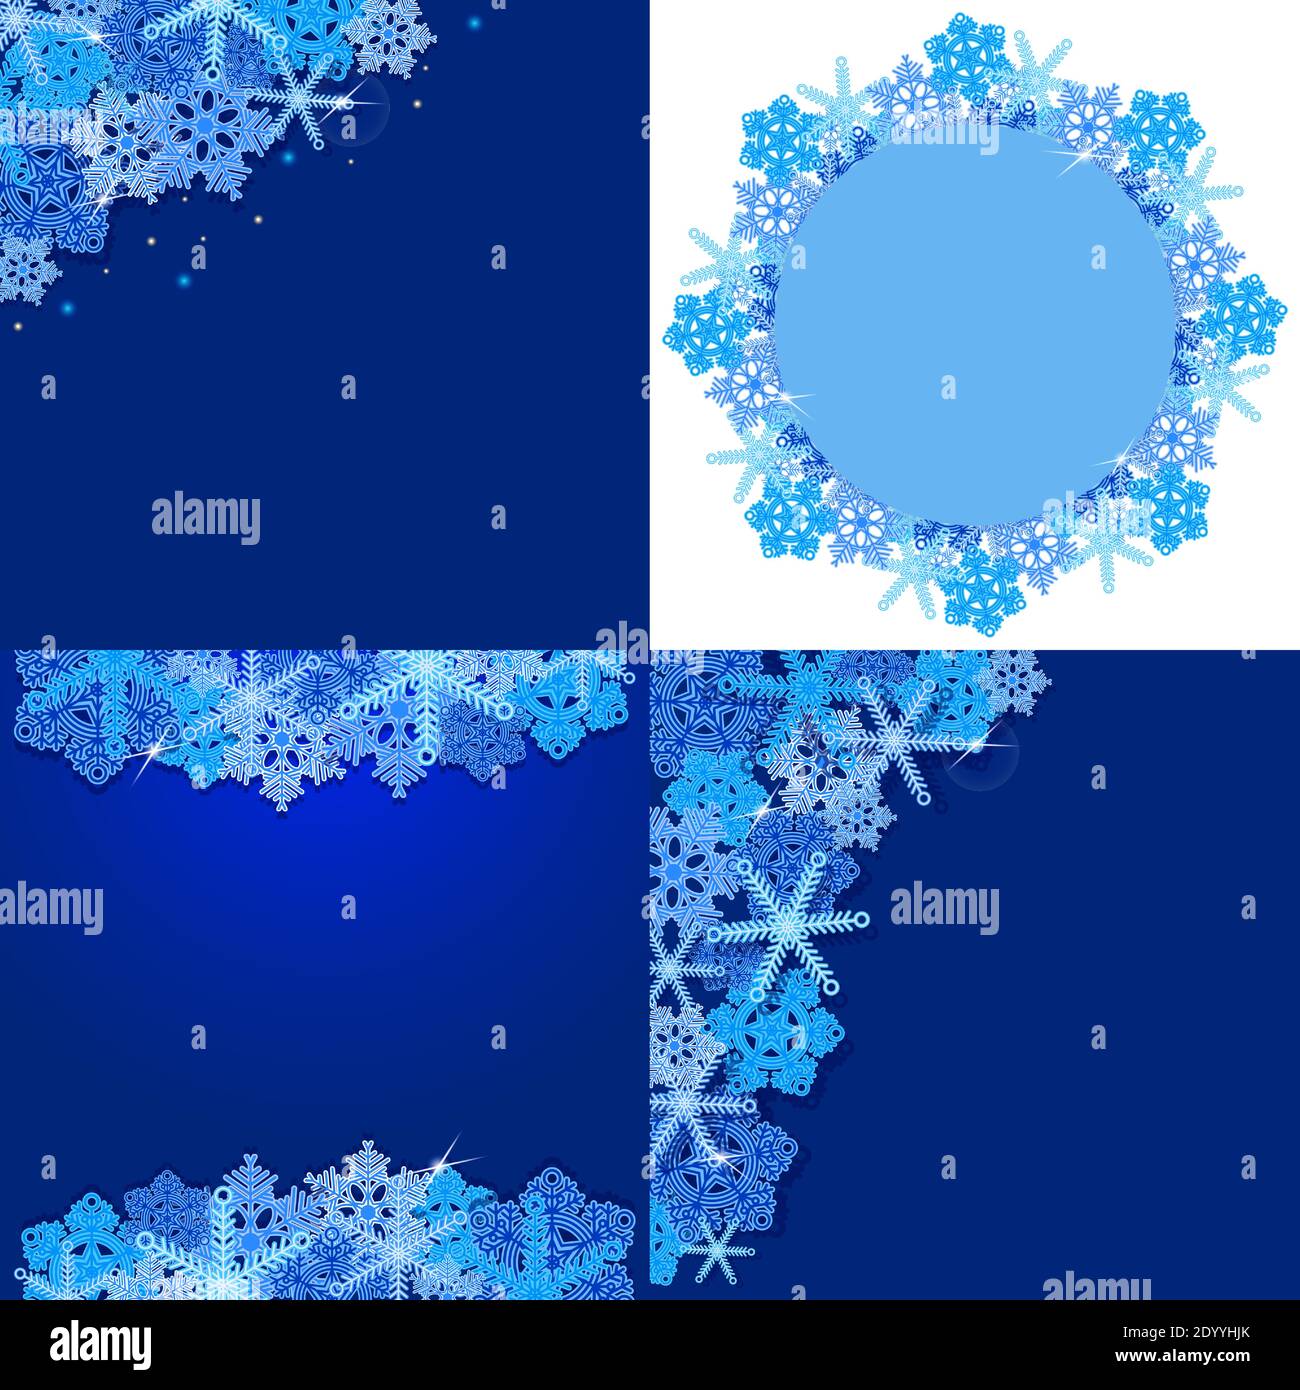 Eine Reihe von Hintergründen mit Schneeflocken und Schnee für die Winterzeit. Für Poster, Postkarten, Poster, Website-Header. Vektor-Vorlage von festlich Stock Vektor